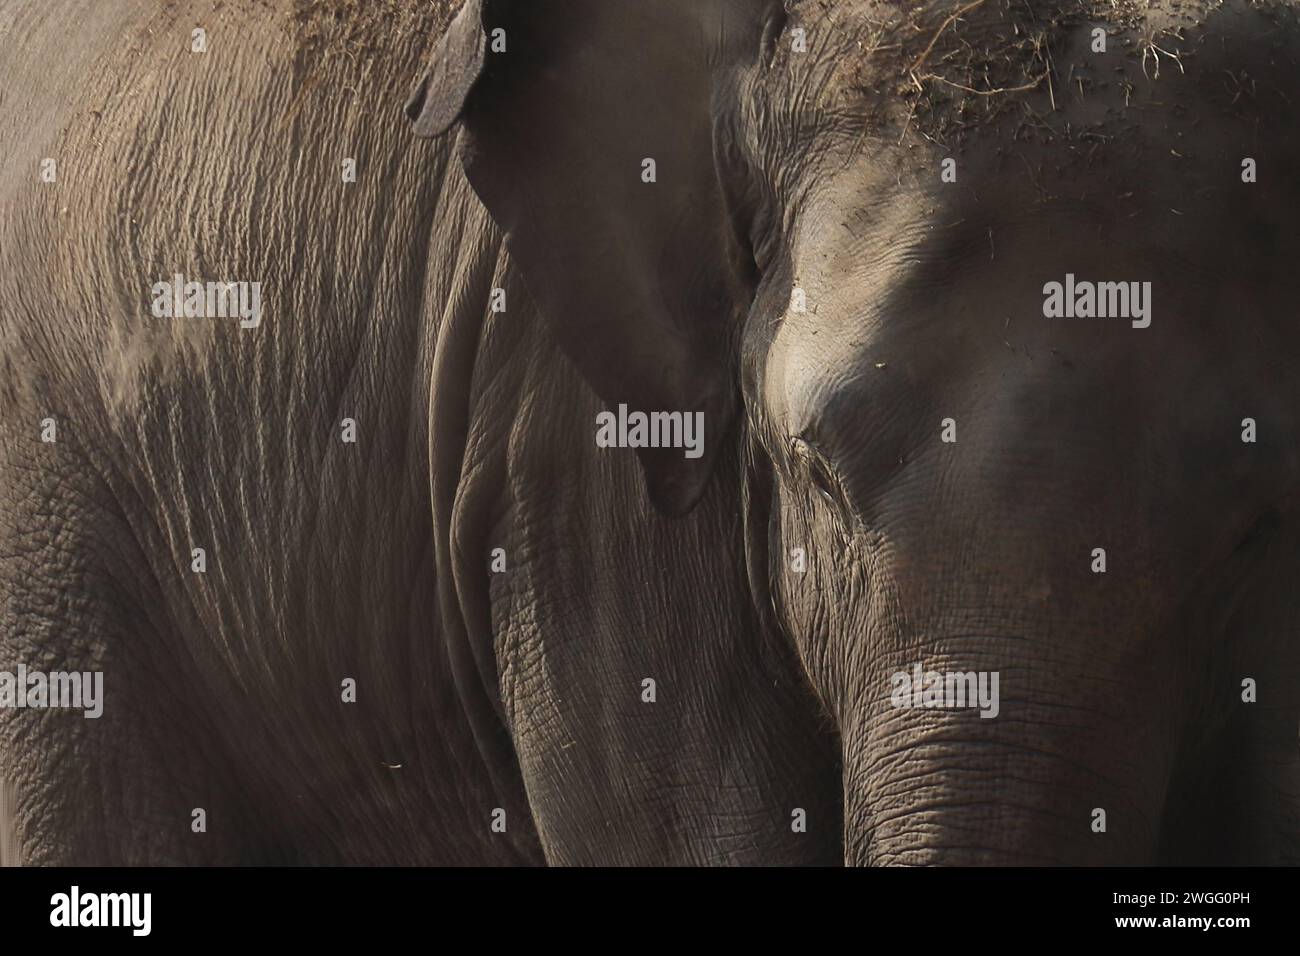 primo piano di un bellissimo ed enorme elefante indiano (elephas maximus indicus) nel parco nazionale di kaziranga, assam, nel nord-est dell'india Foto Stock